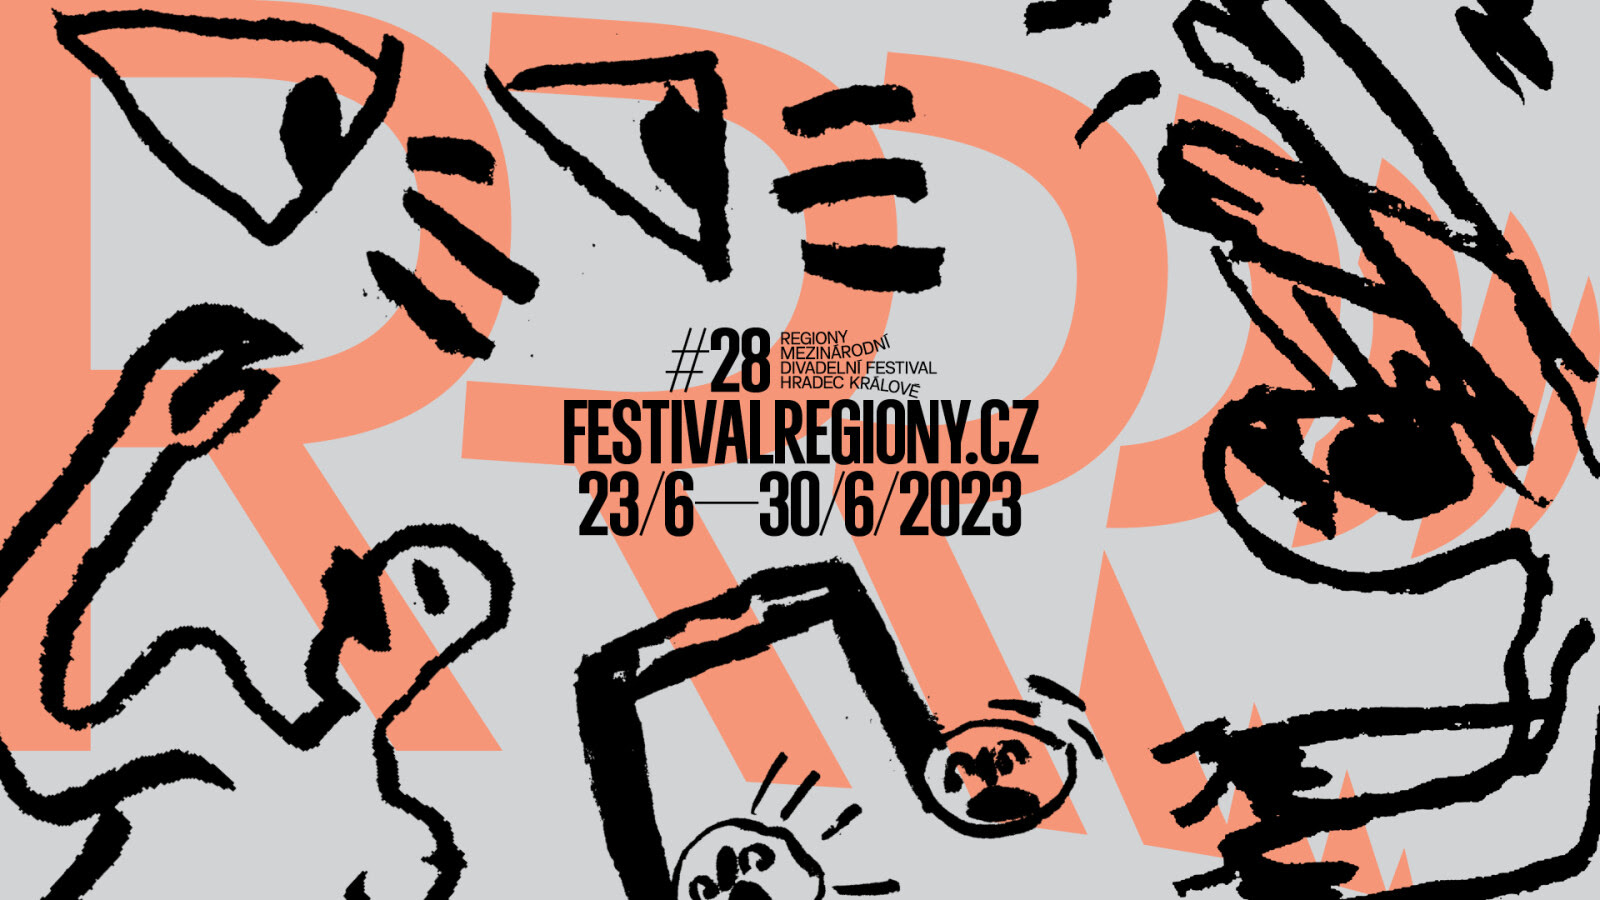 www.festivalregiony.cz